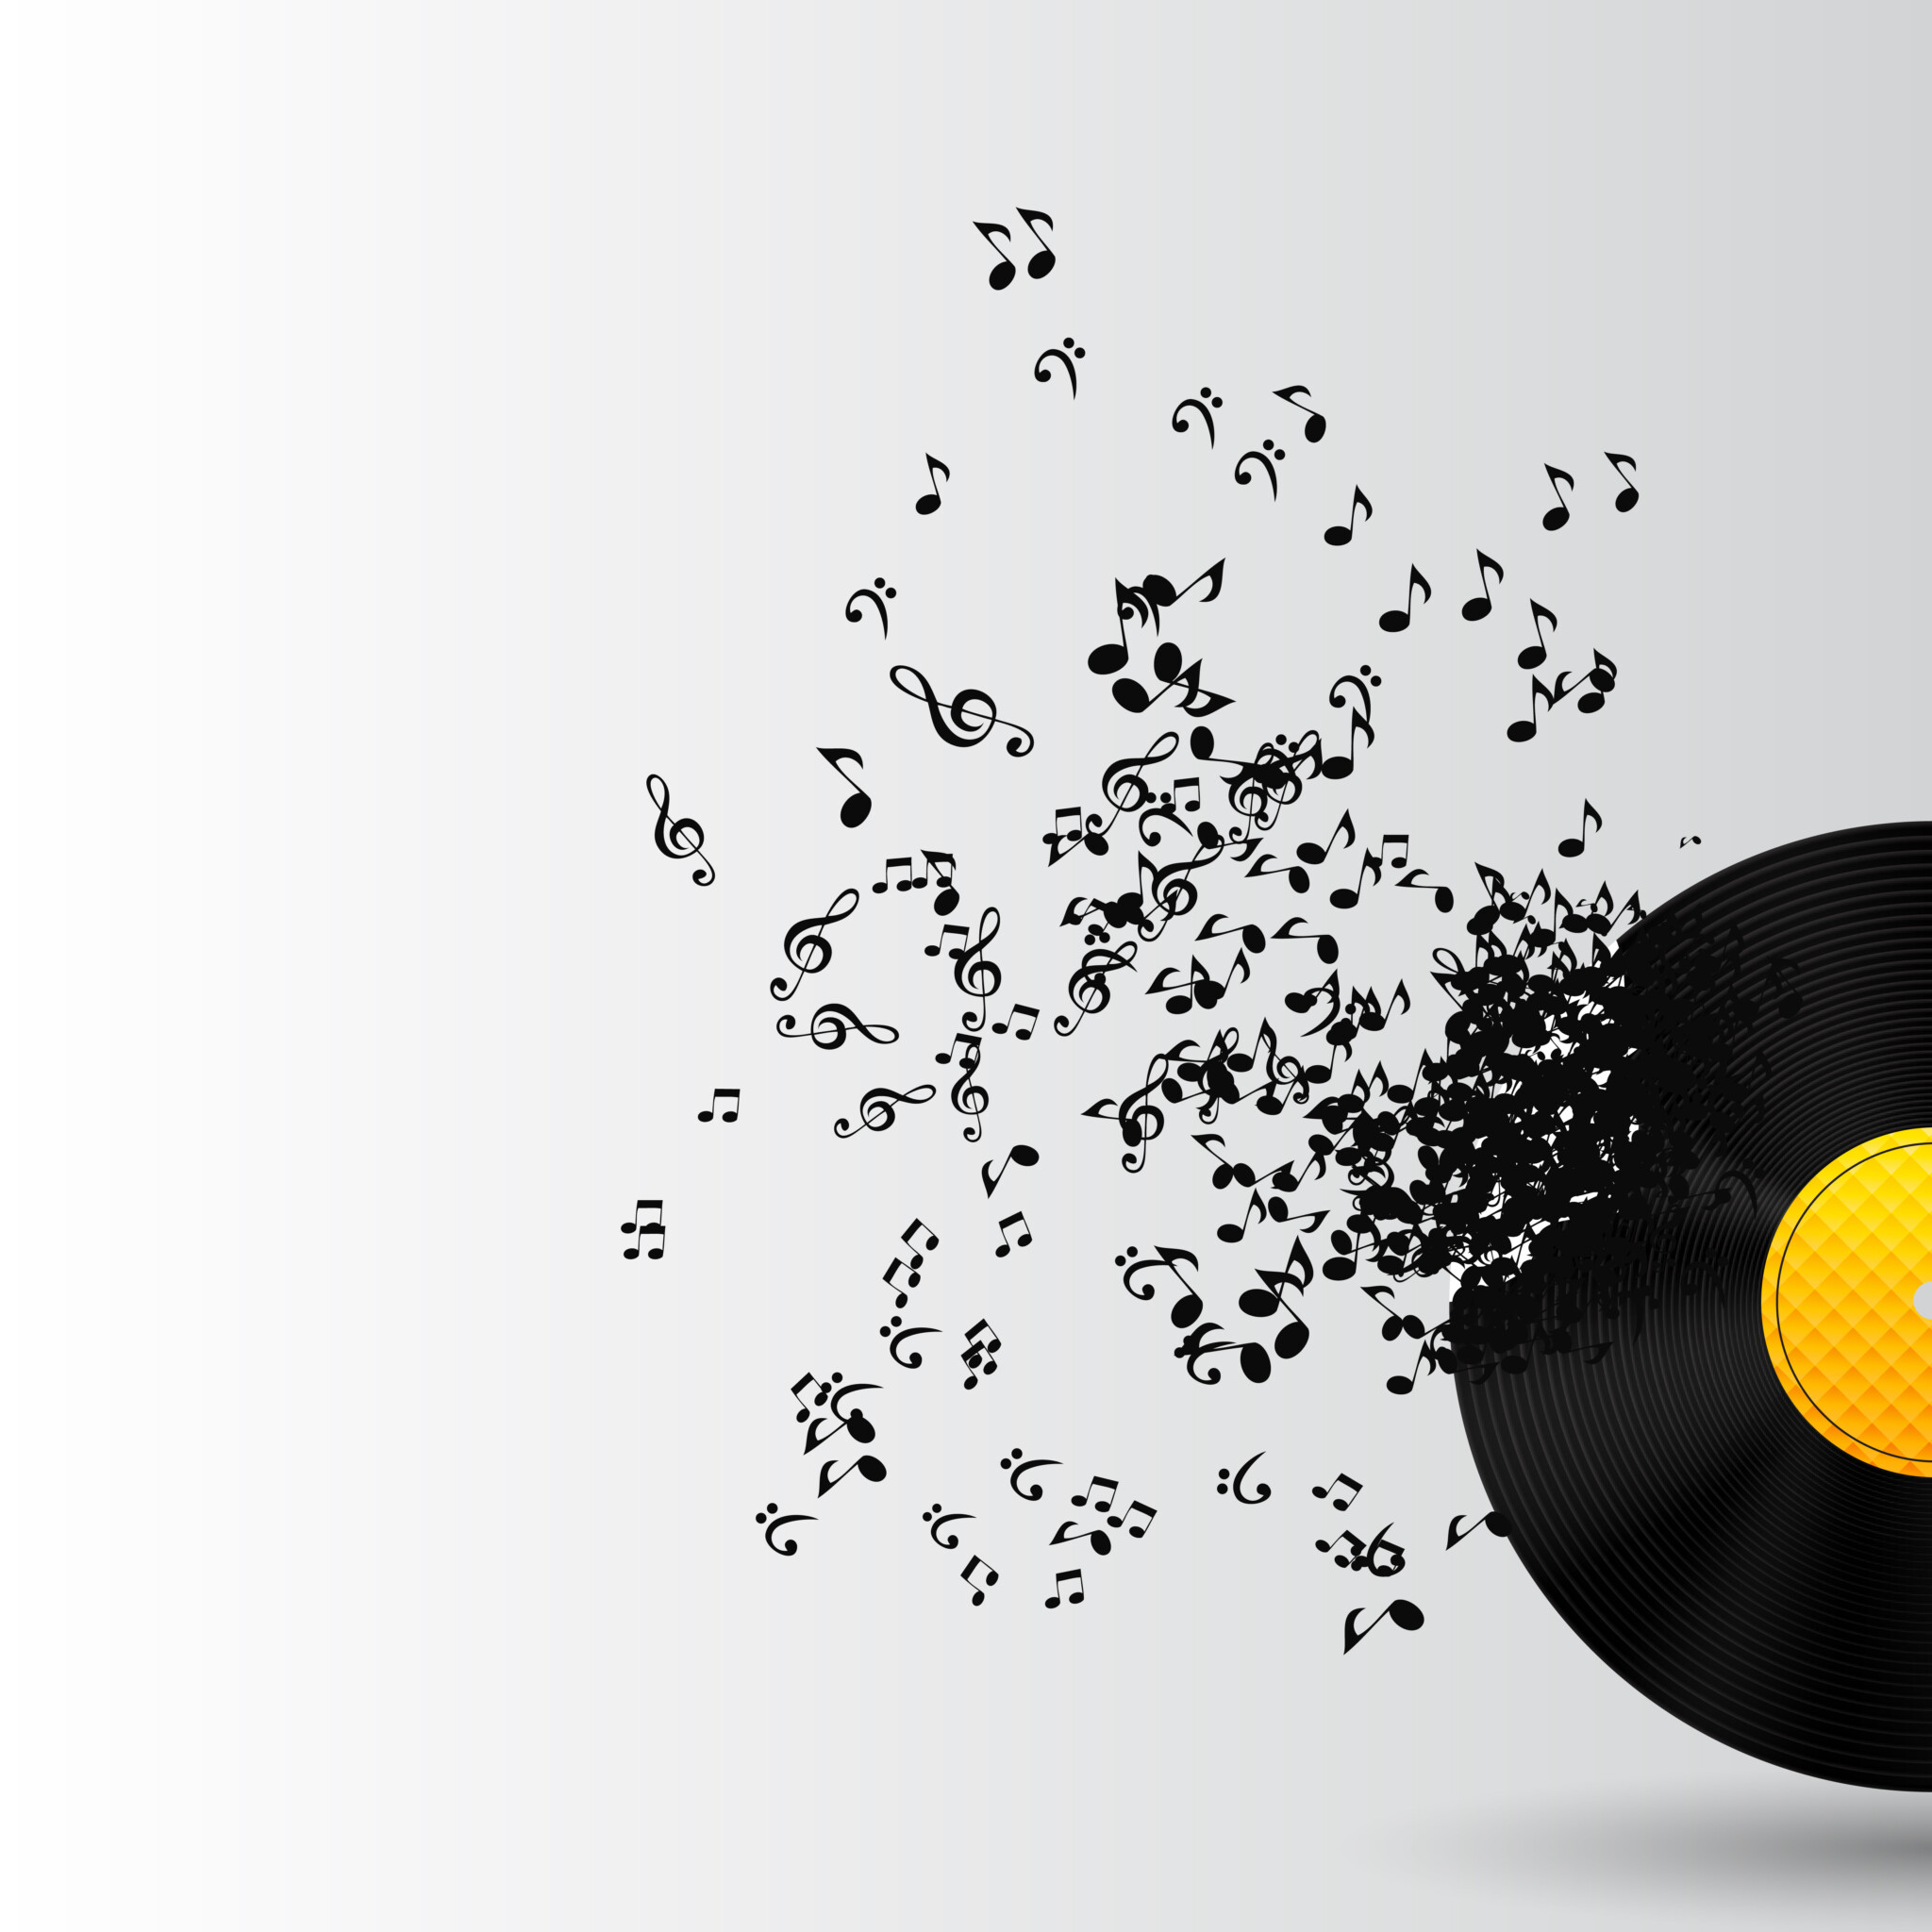 Spiller du musik for dine kunder? Hvis du gør, så bør du have styr på ophavsretsloven, så du ikke ender med en stor bøde og lovovertrædelser. Få styr på musikken med Koda.